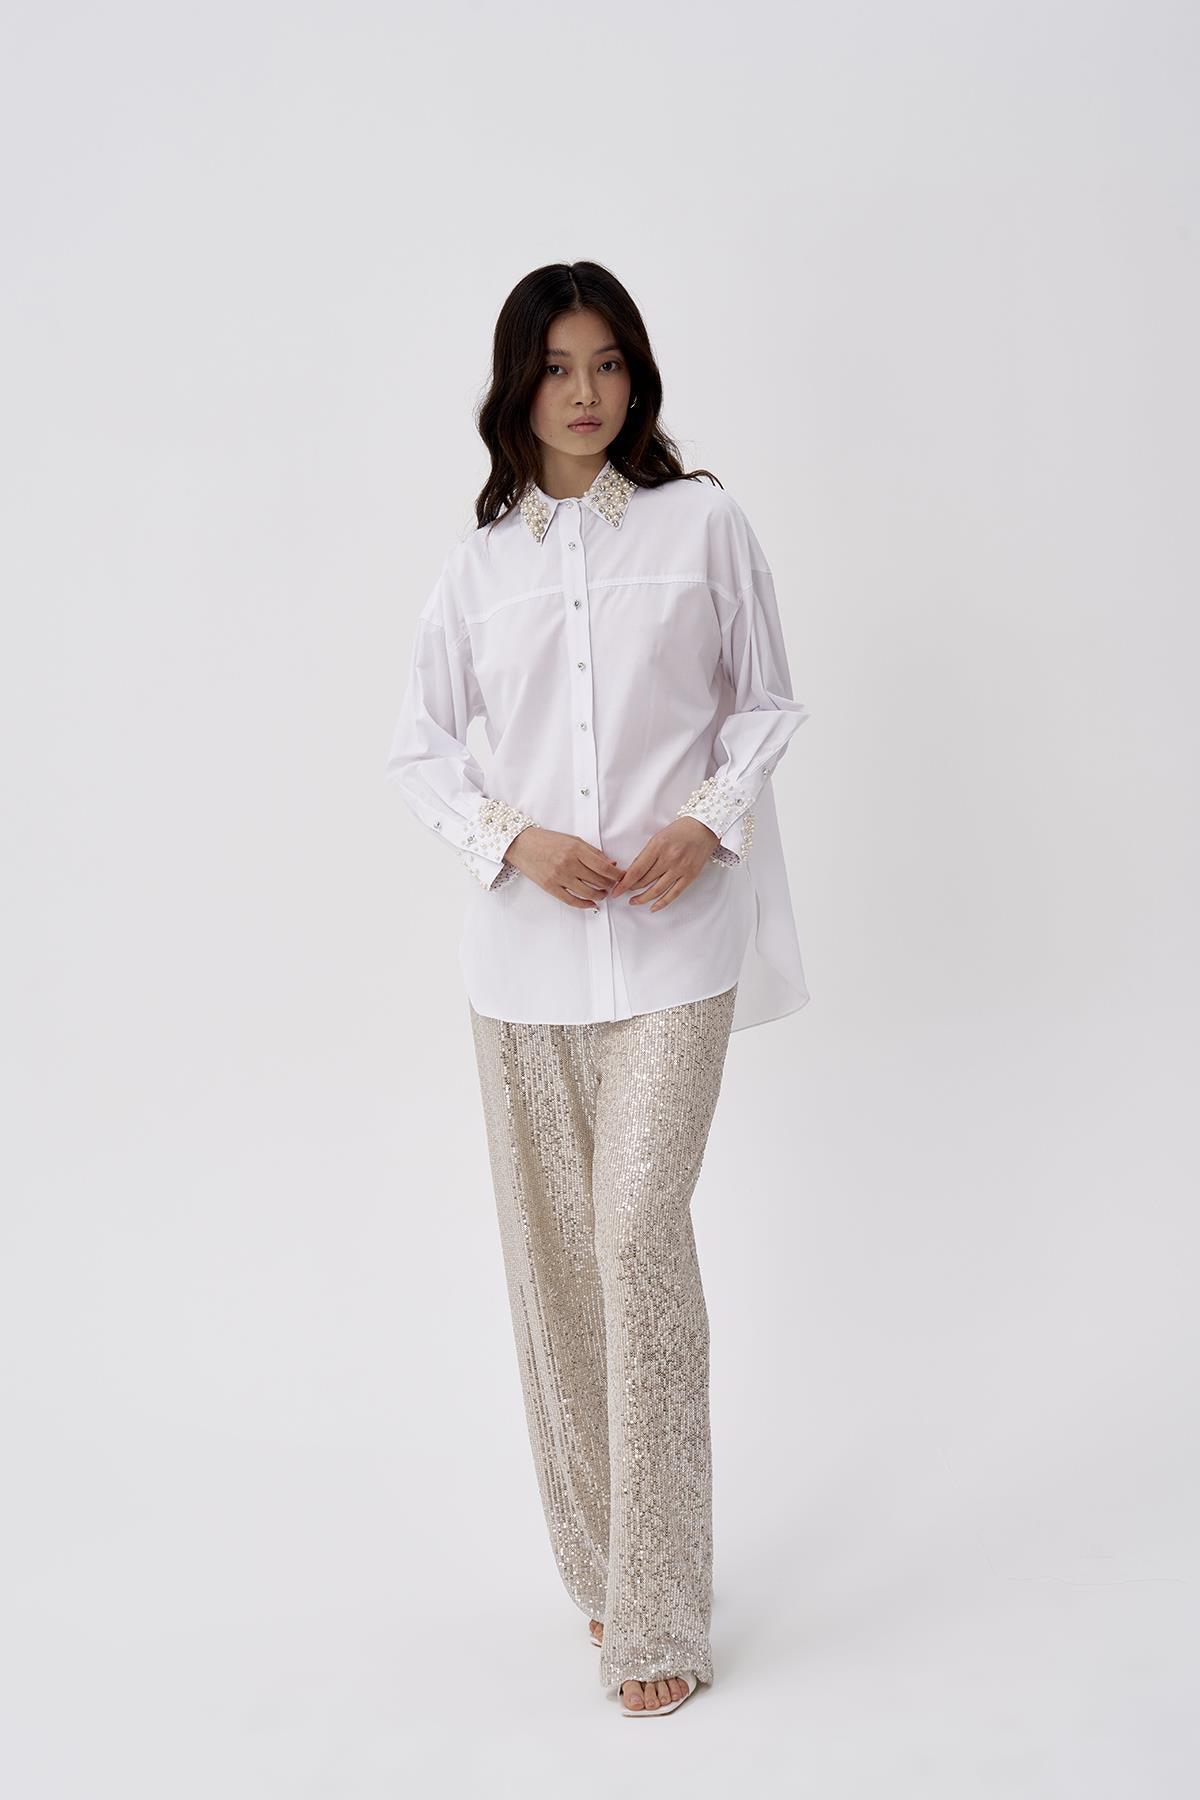 Kol Manşeti ve Yakası Taşlı Kadın Gömlek - Eser Giyim